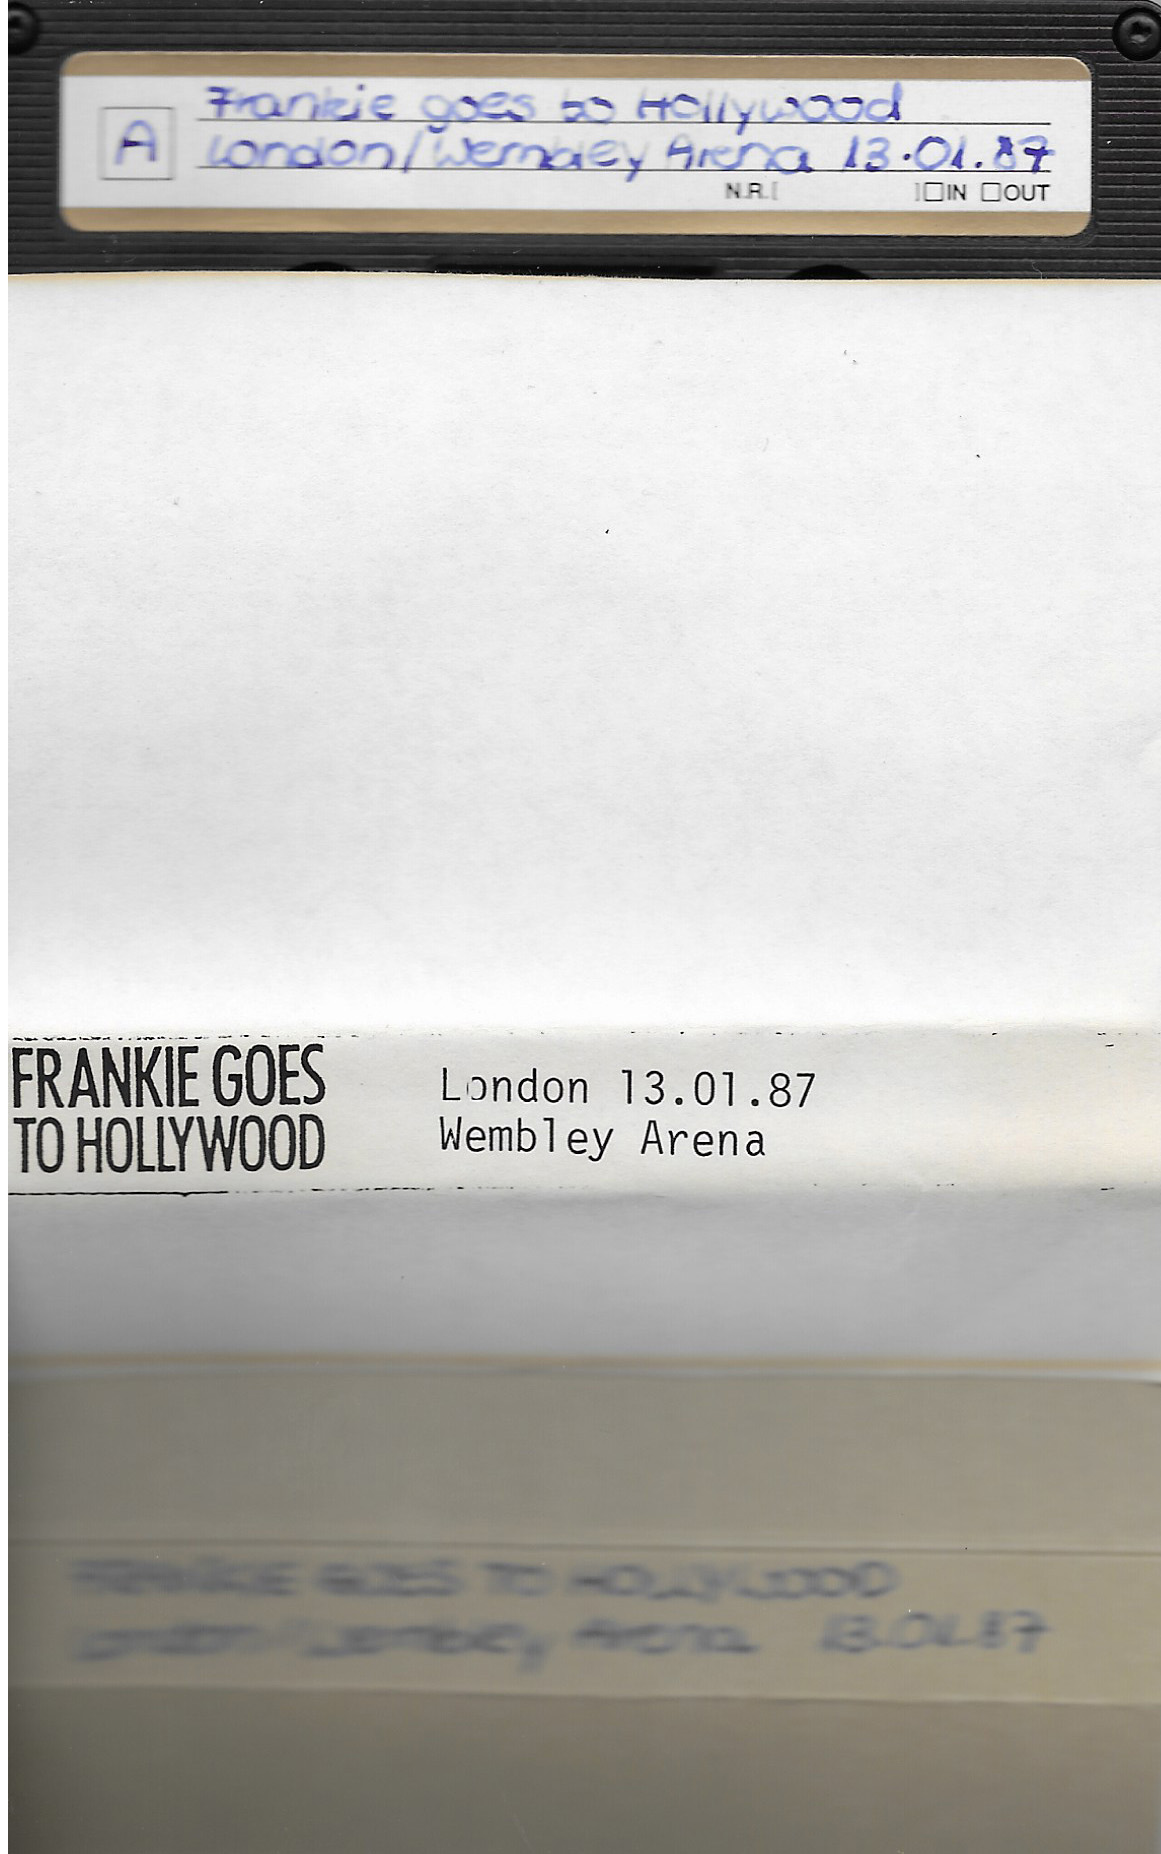 Frankie live in 1987